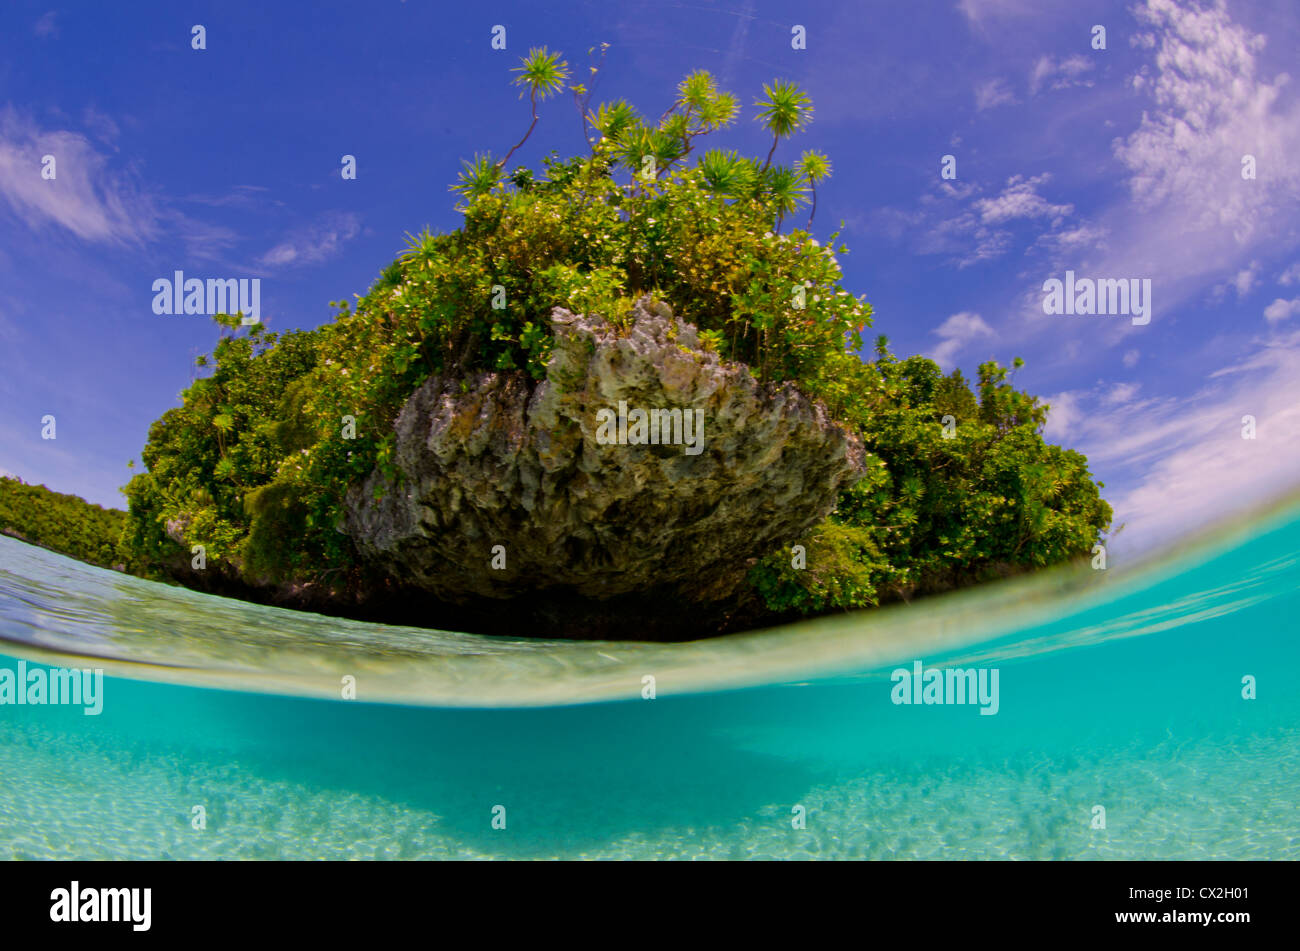 Scena subacquea di Palau, barriere coralline, split, fotosub, acqua azzurra, acqua chiara, isola, isola tropicale, paradise, snorkel, mare Foto Stock